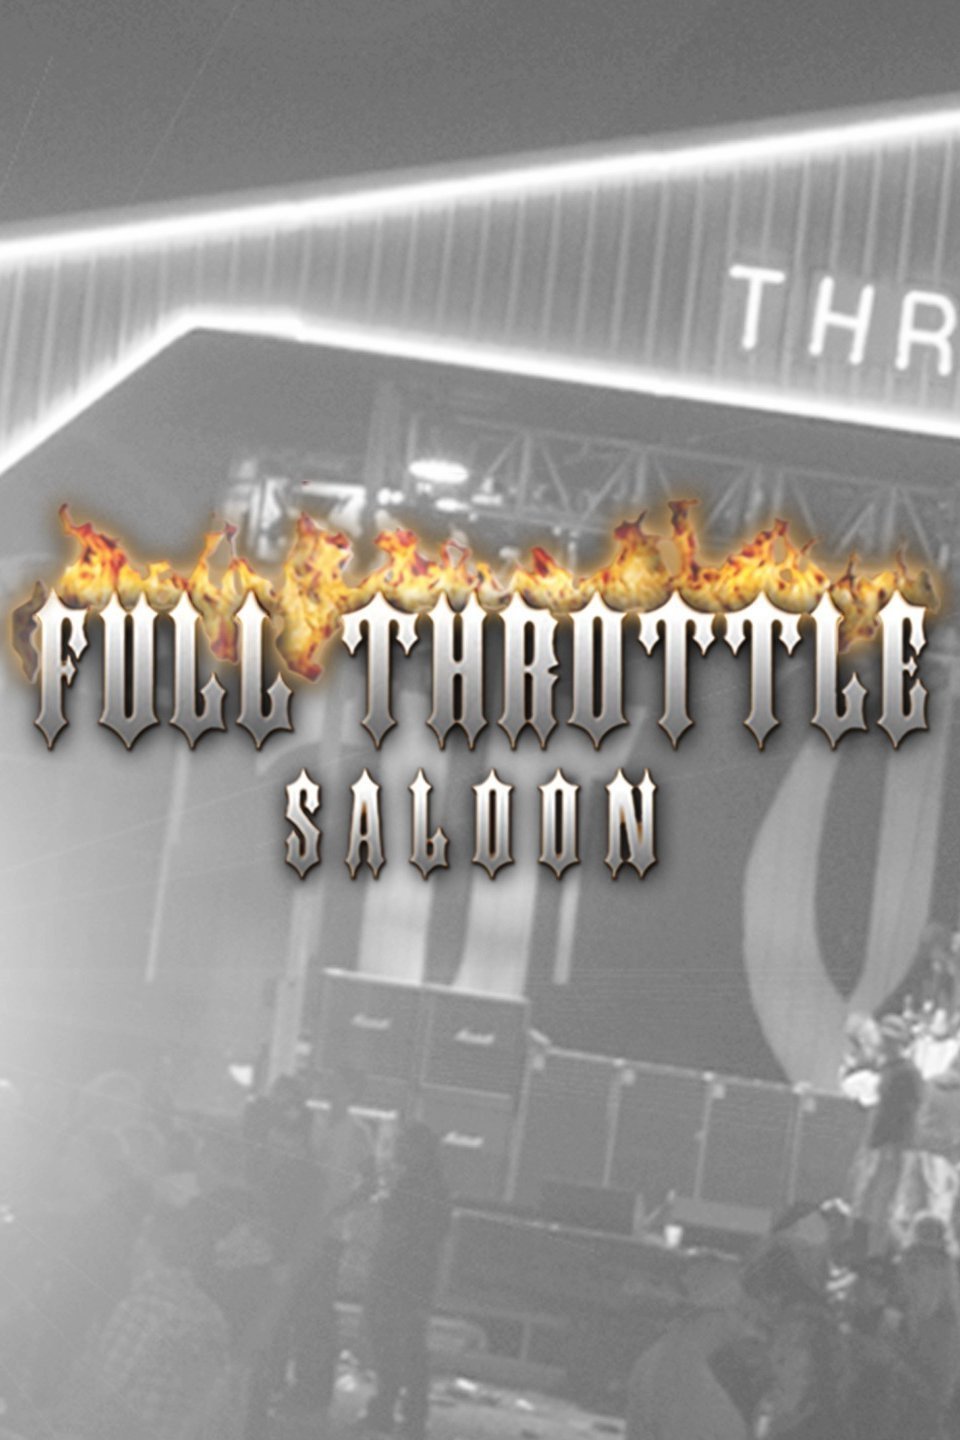 Full Throttle Saloon Rotten Tomatoes